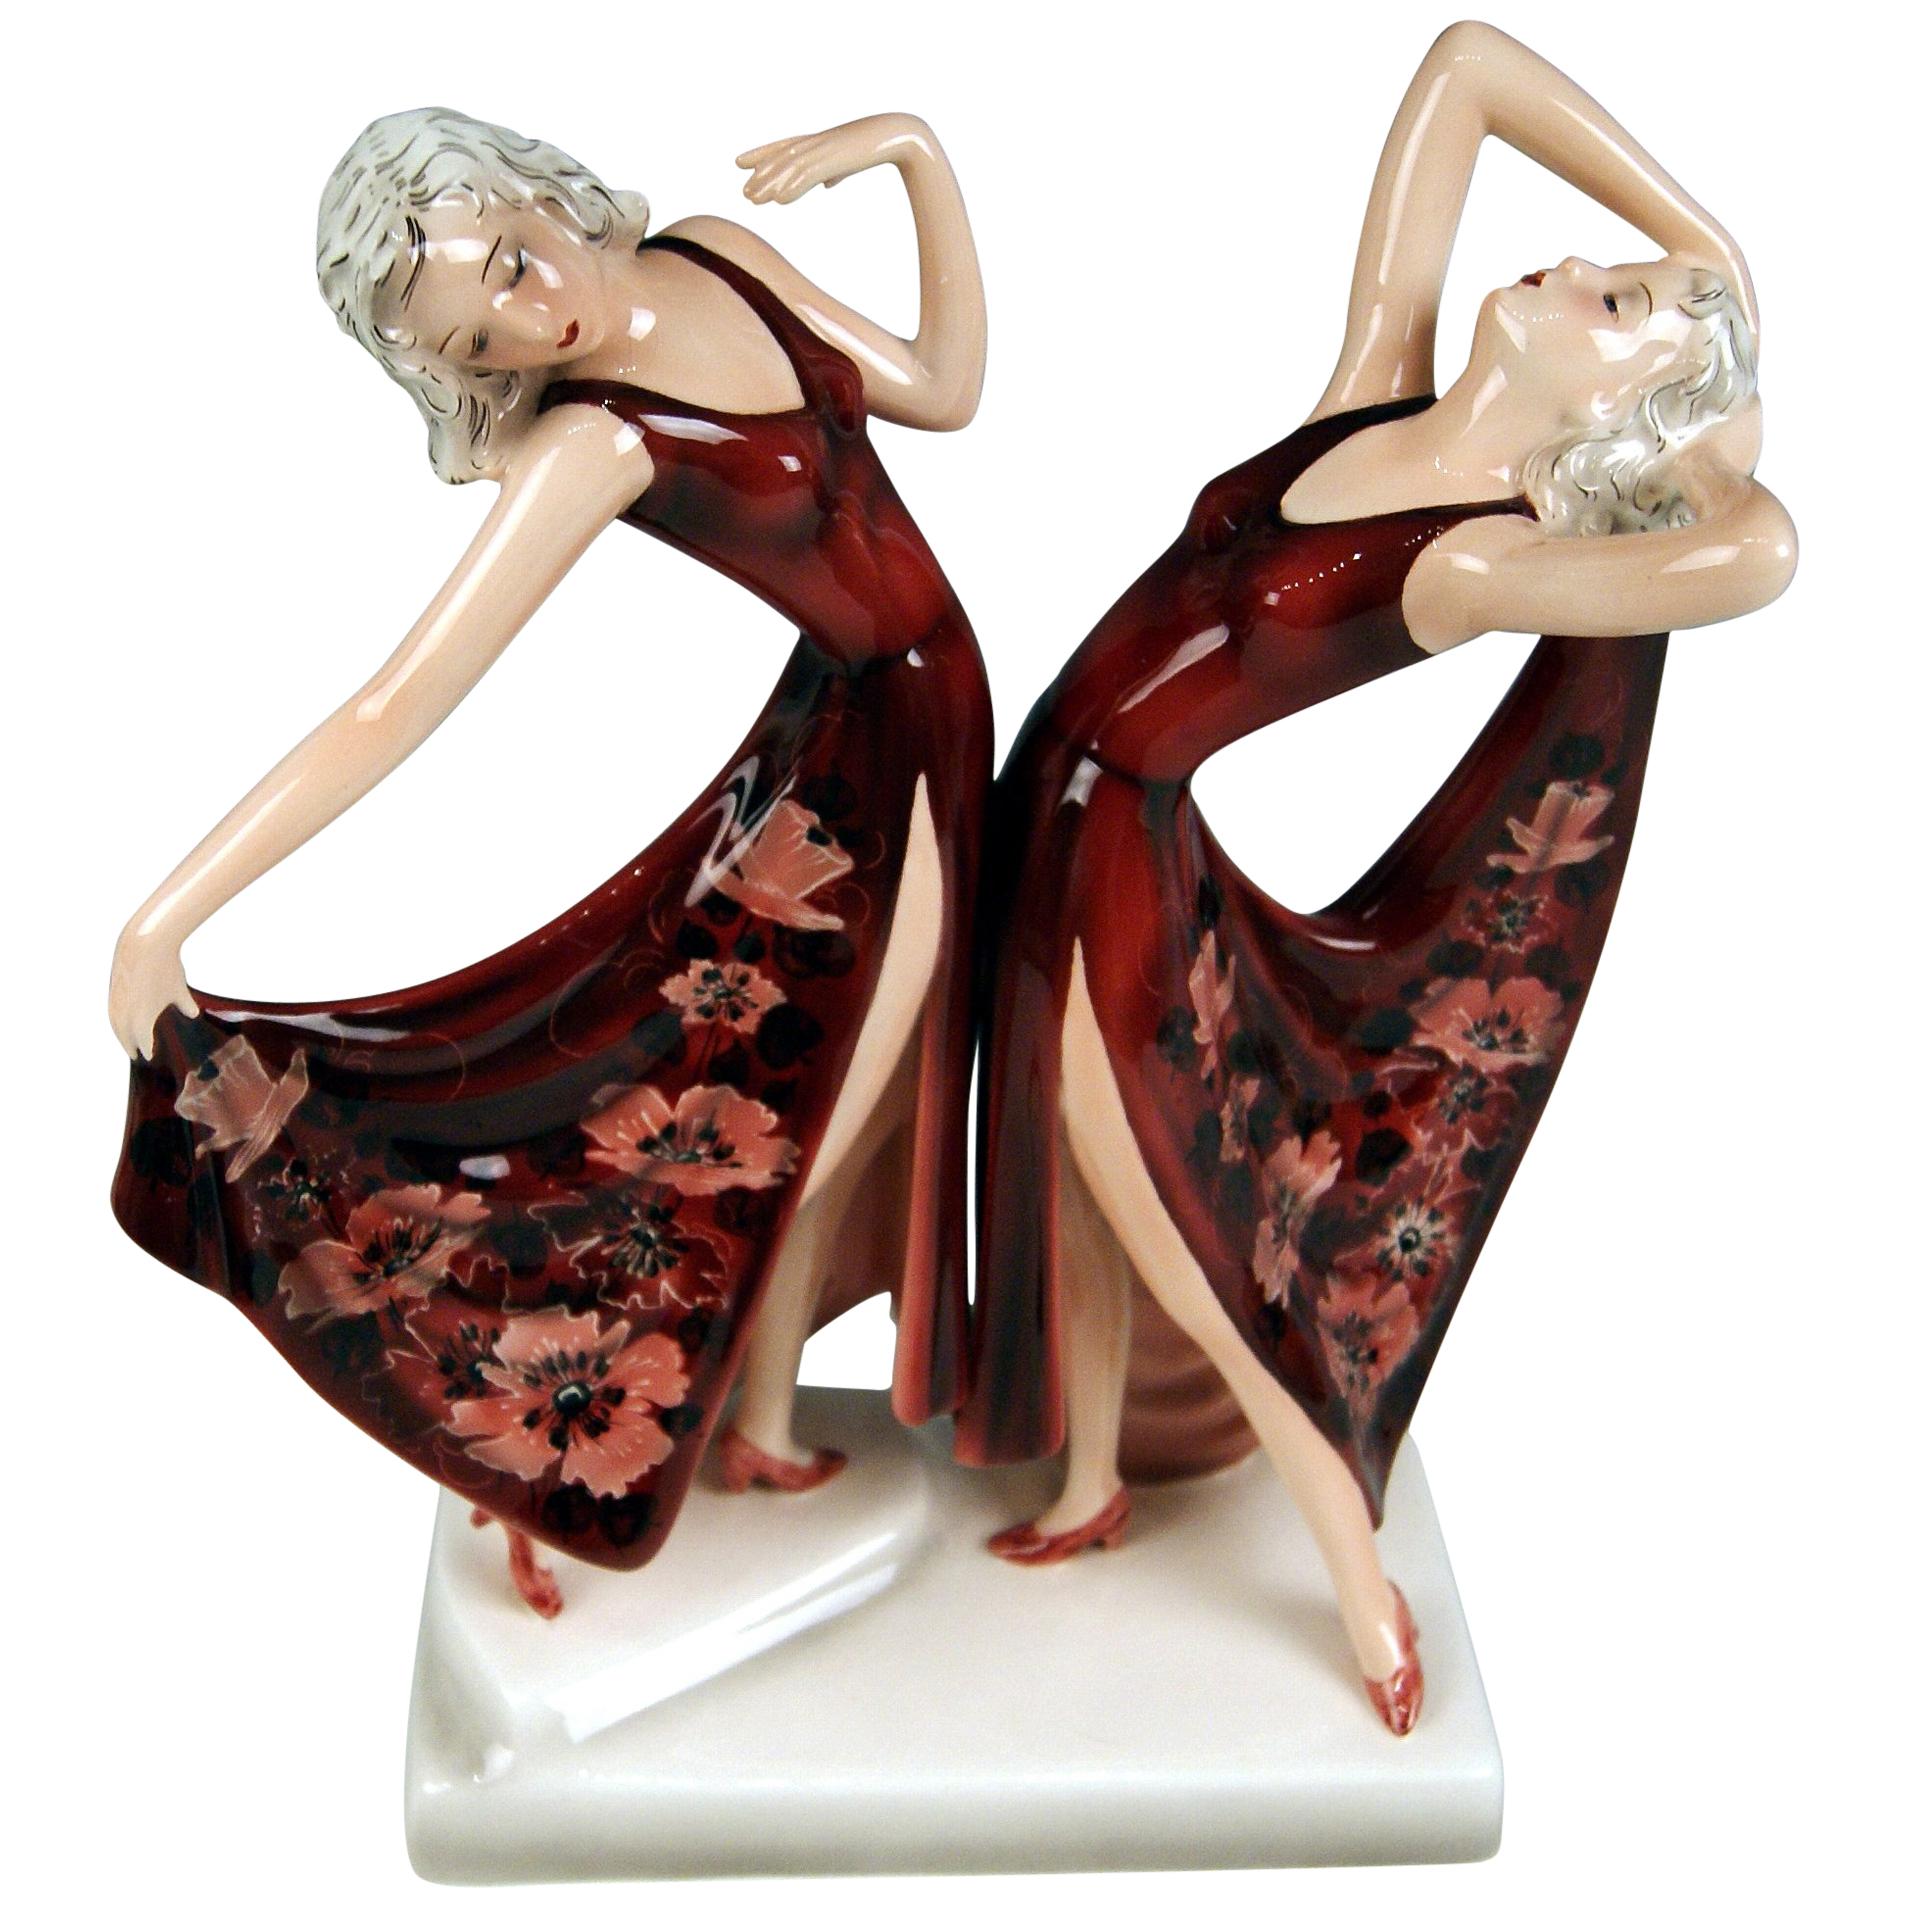 Goldscheider Vienna Schuster Dolly Twins Two Figurines Model 7868 by Dakon 1942